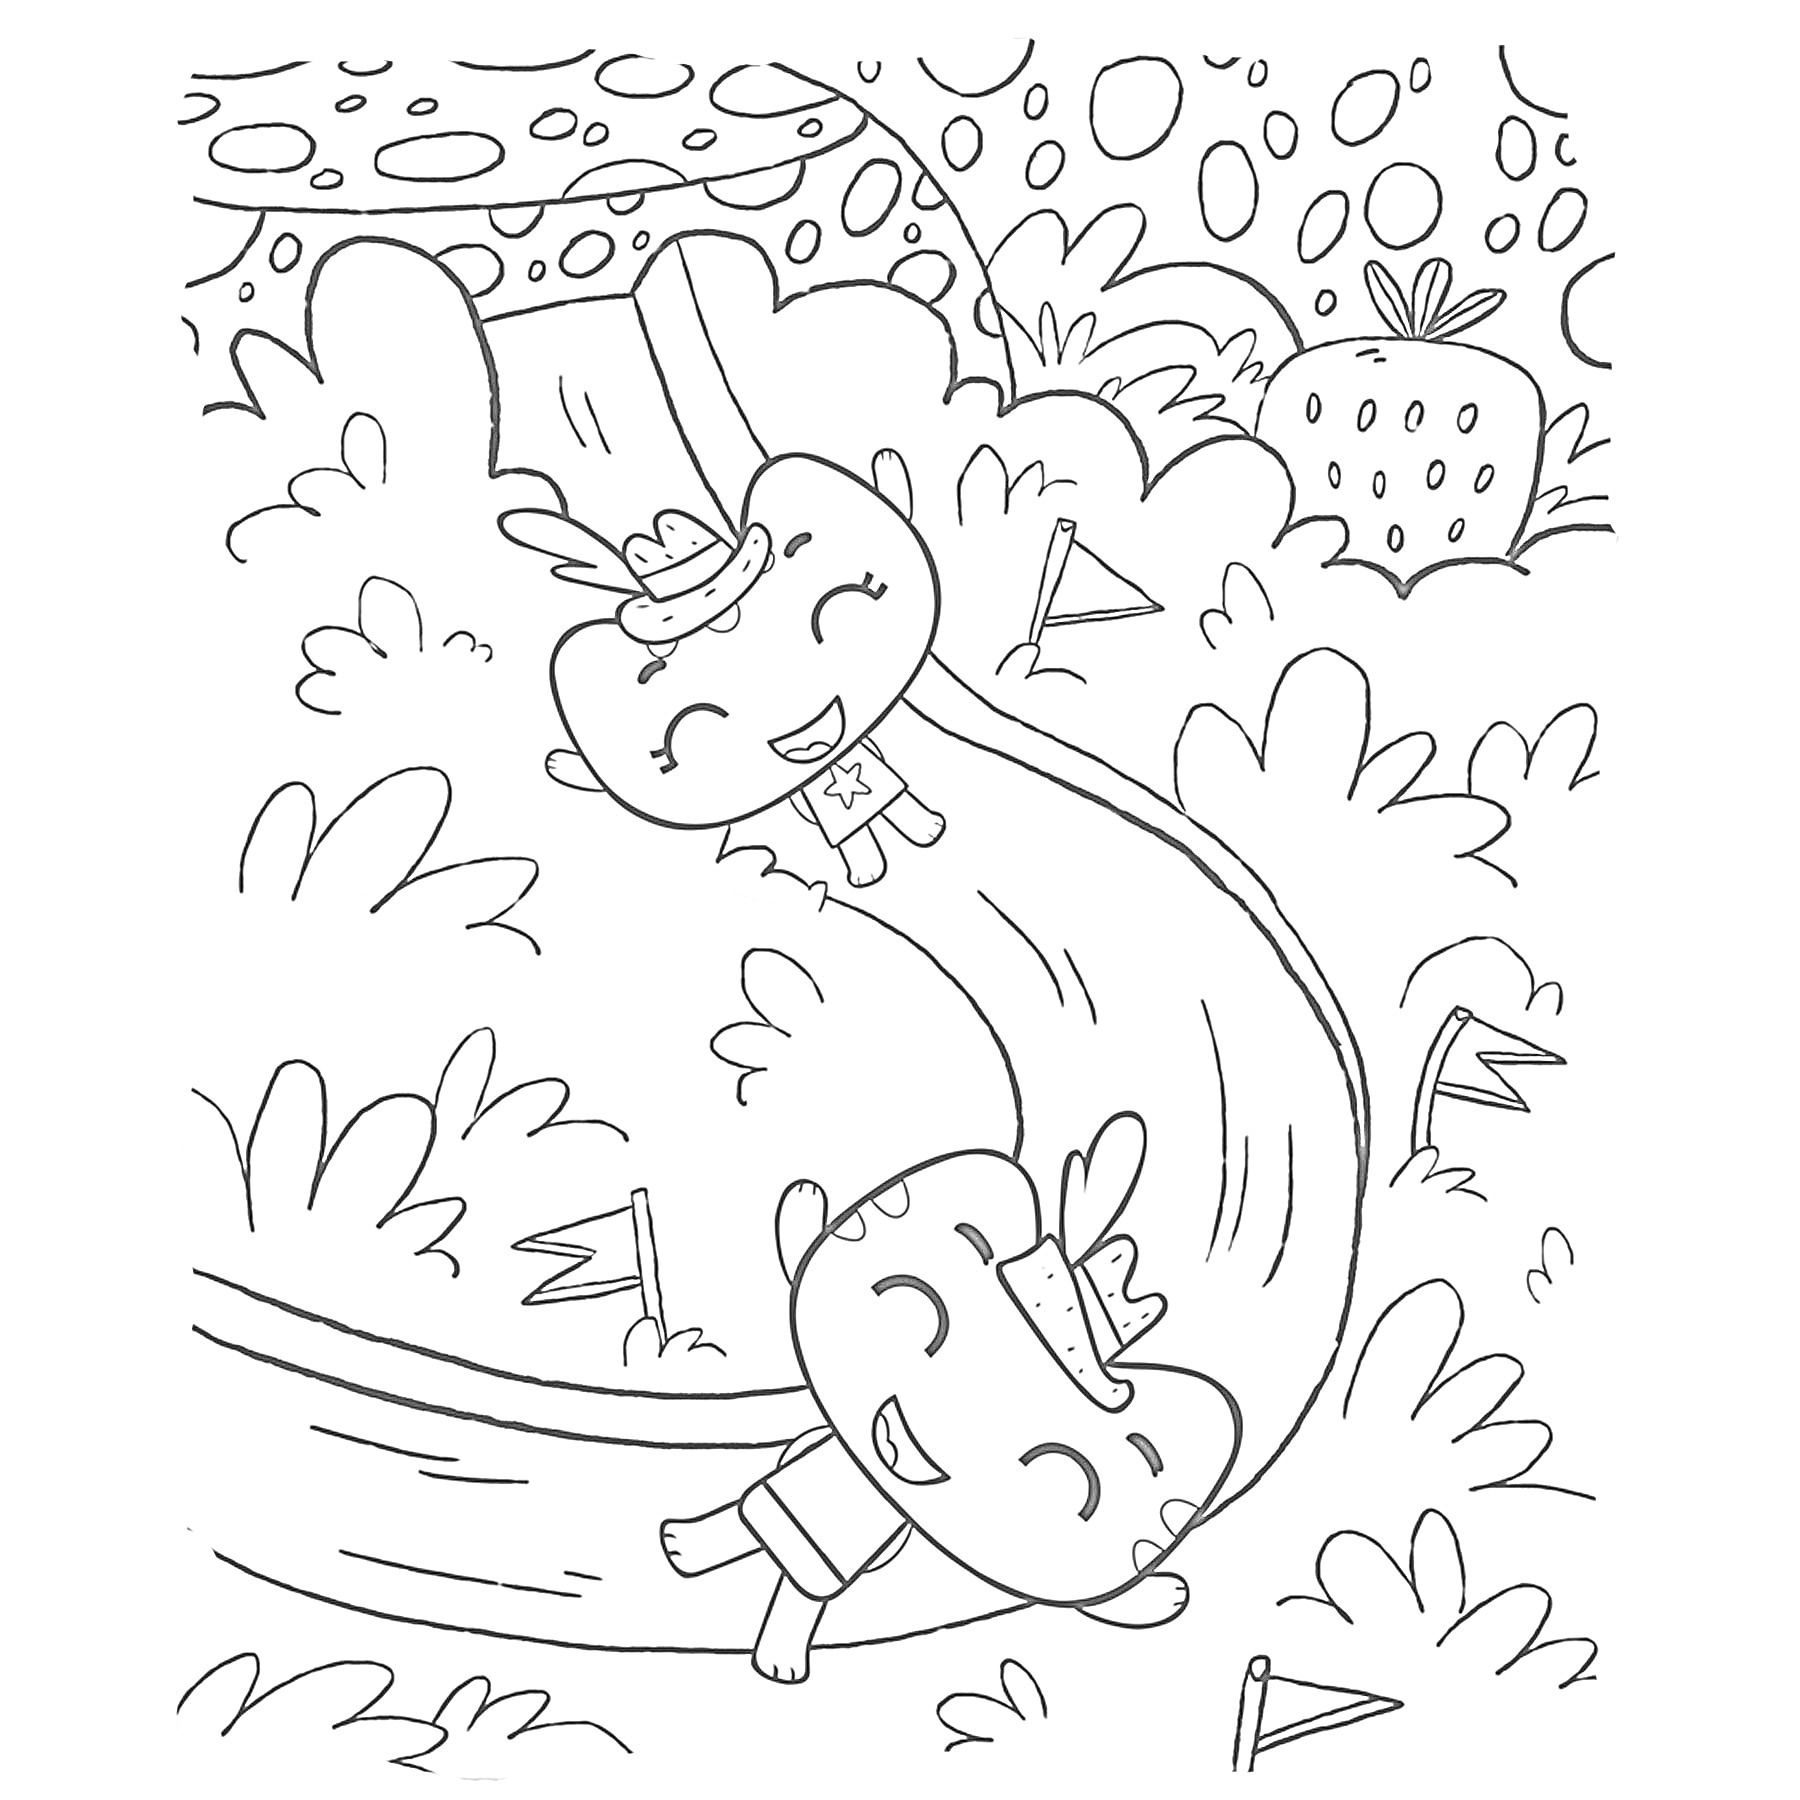 Два весёлых котика катаются с горки в лесу, окружённые кустами и флажками; на заднем плане большая клубника и причудливое небо